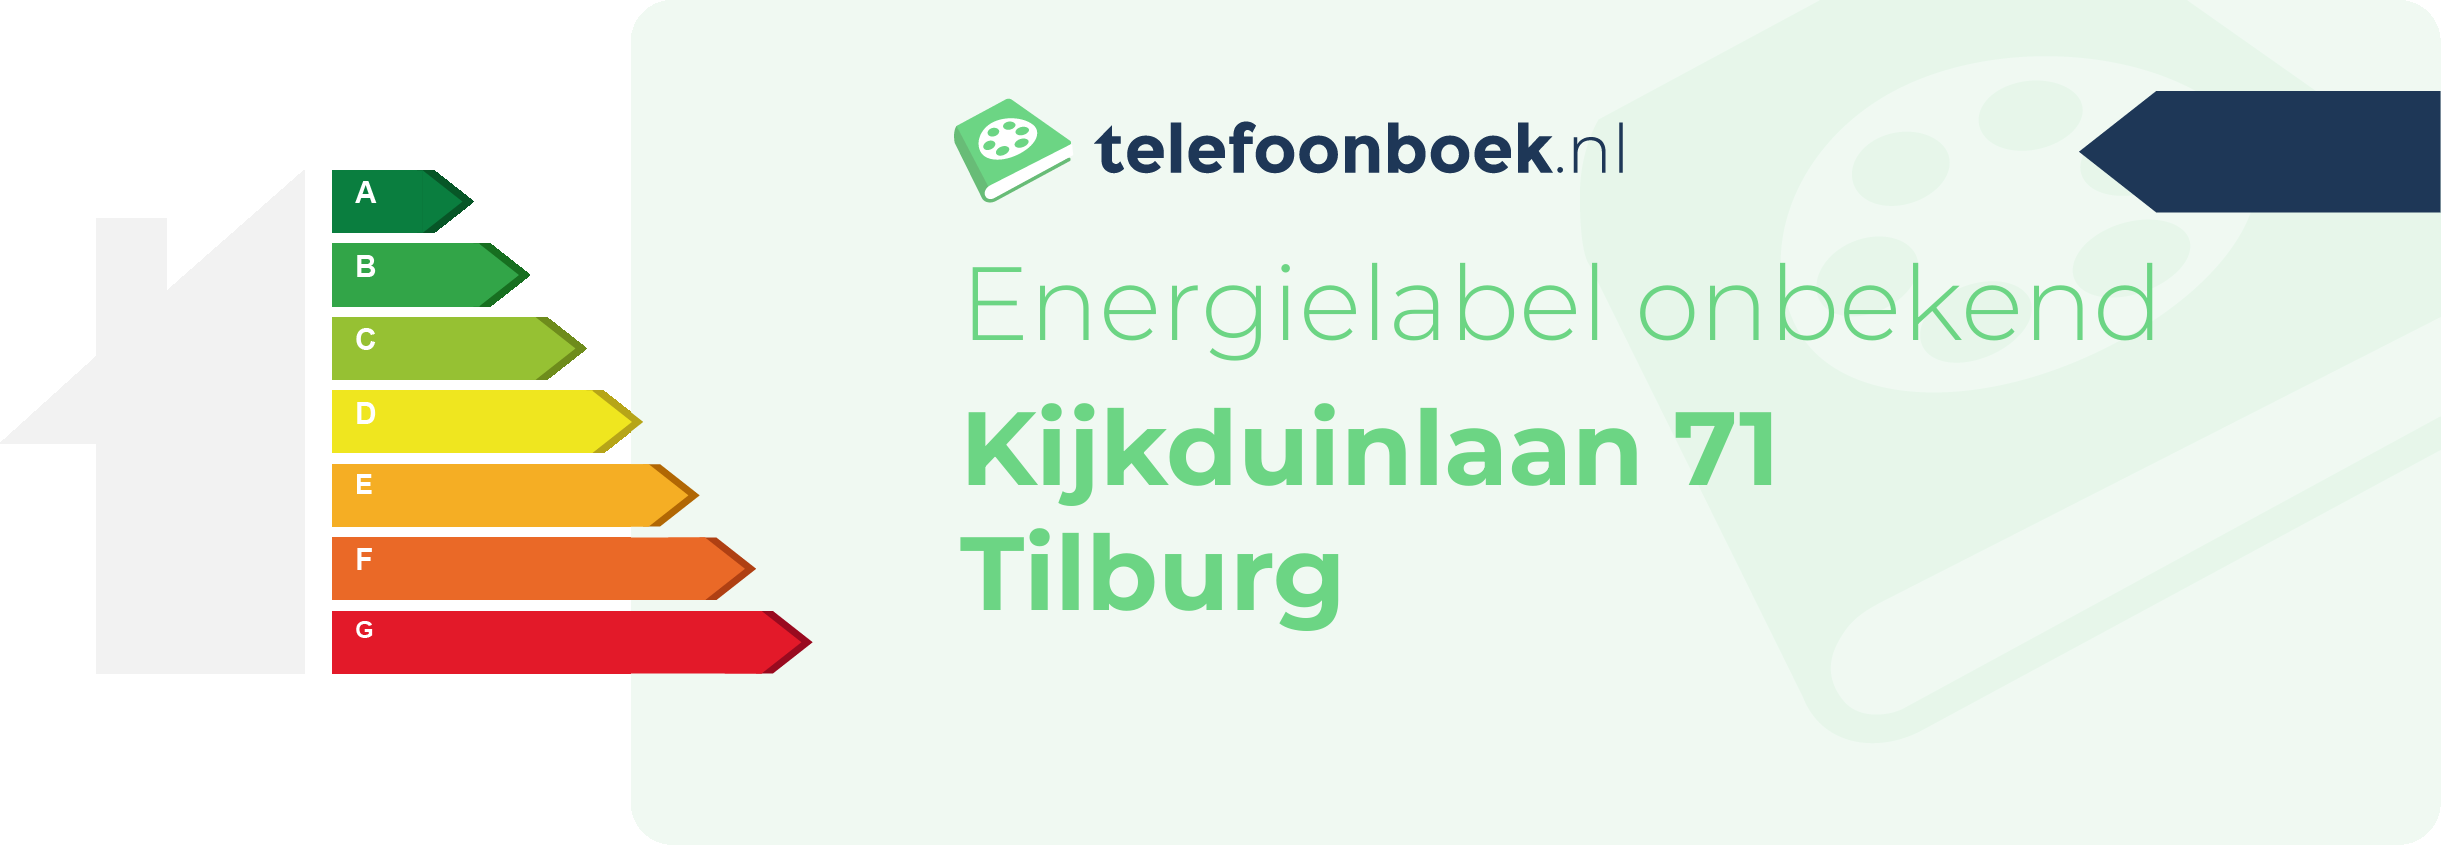 Energielabel Kijkduinlaan 71 Tilburg